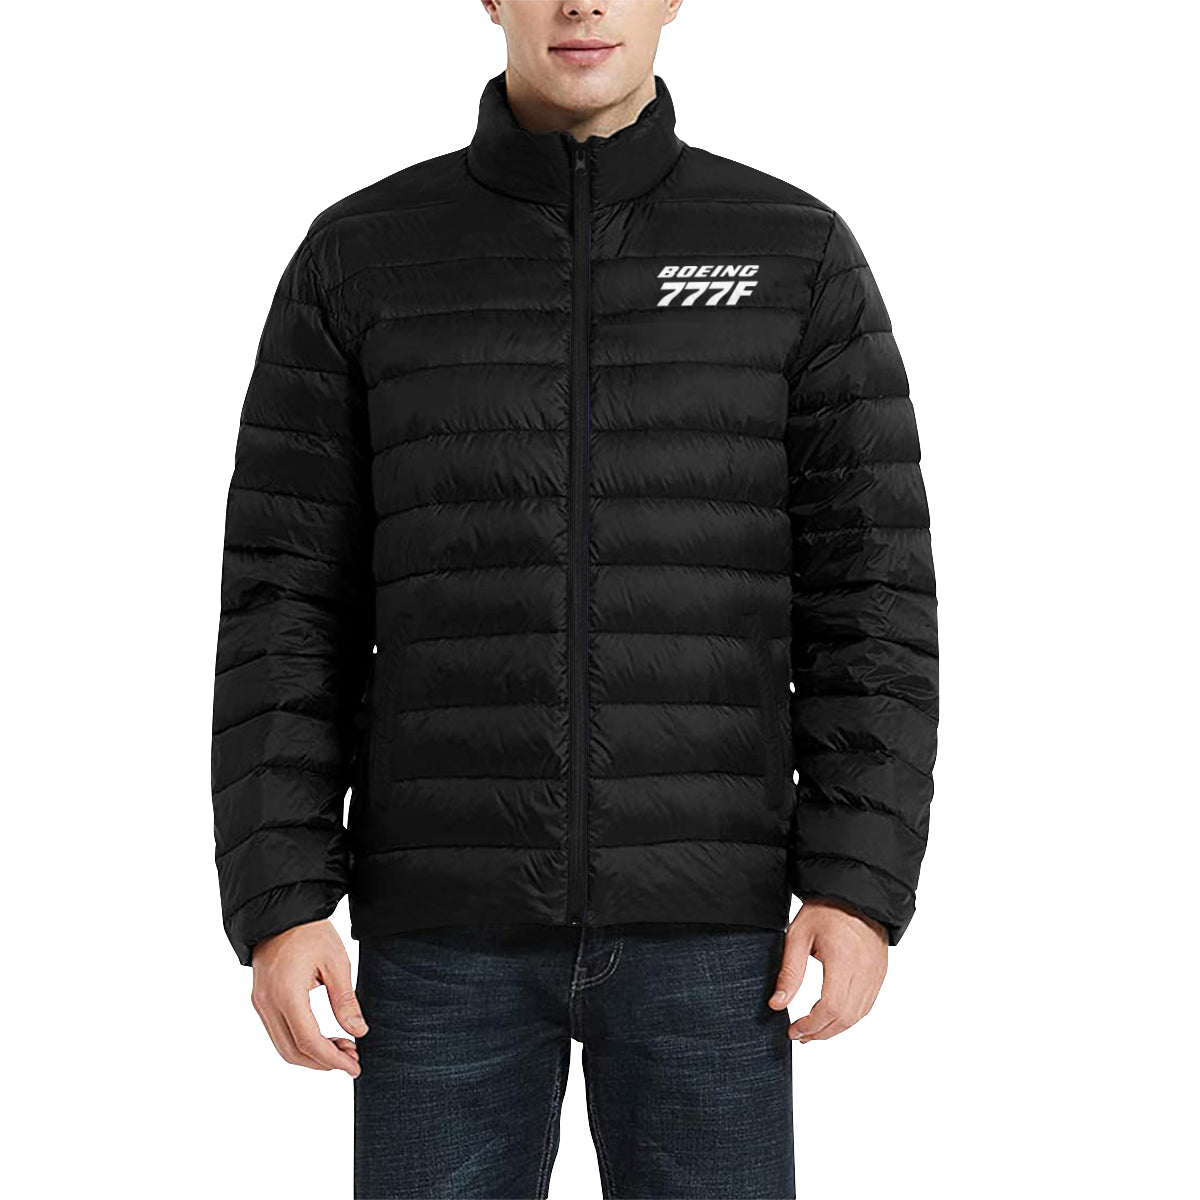 BOEING 777F Men's Stand Collar Padded Jacket e-joyer